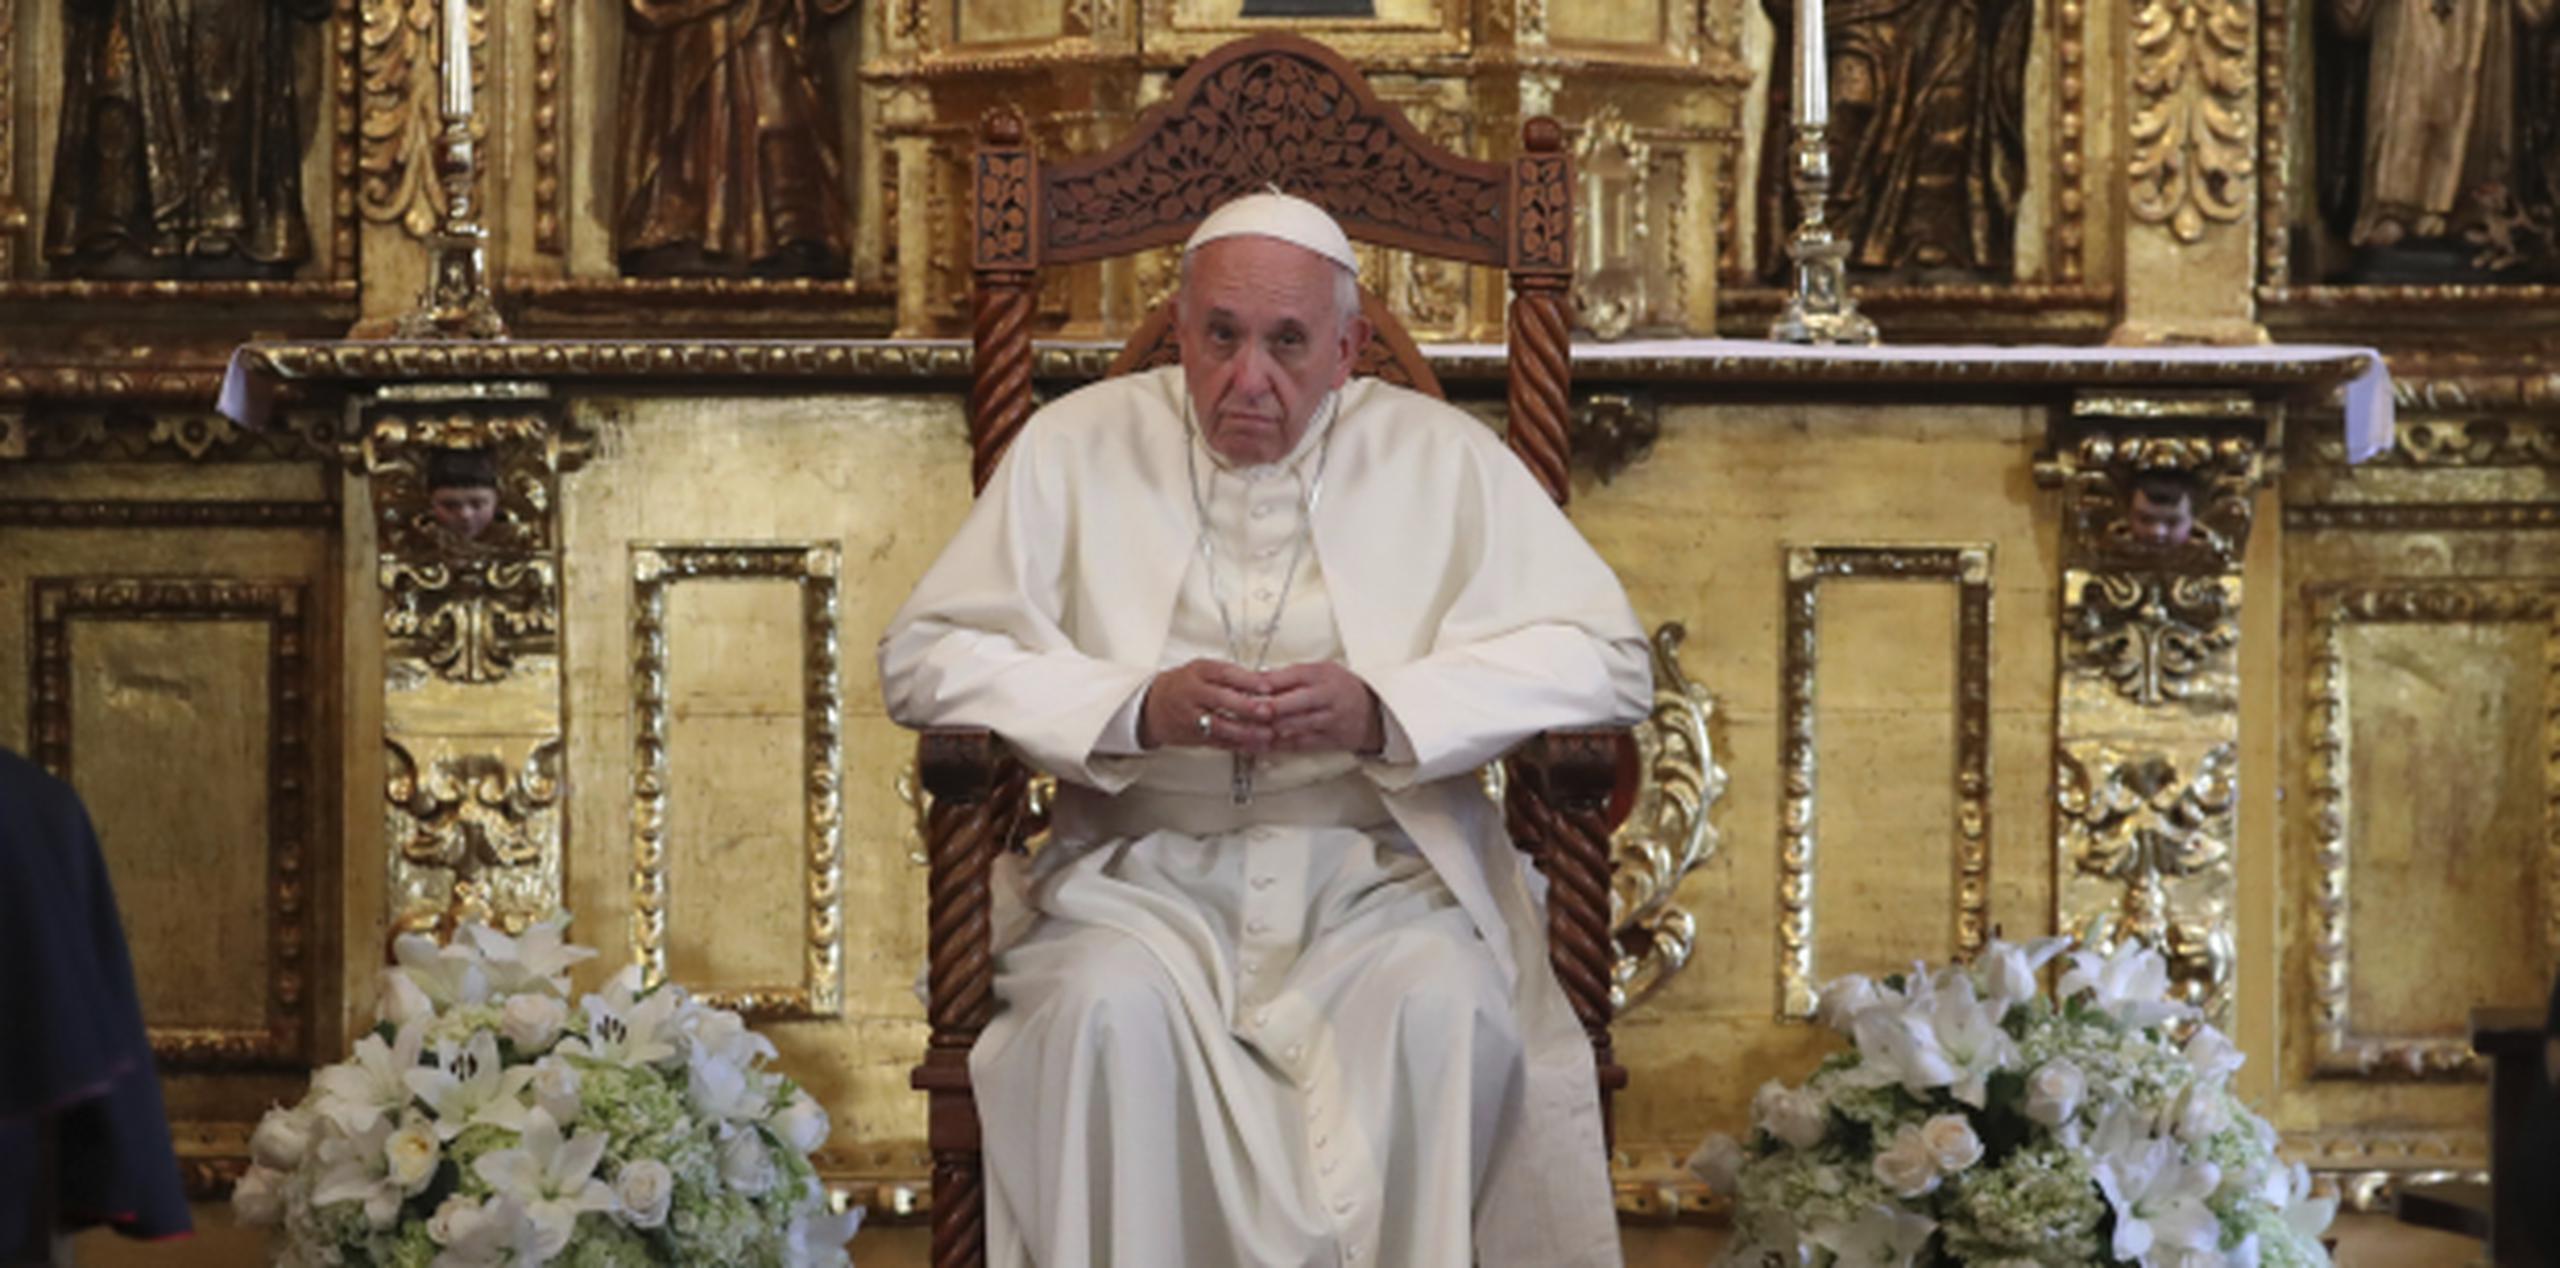 “La gira en Chile del Papa se convierte en la peor de sus cinco años de pontificado”, decía el titular de Clarín, uno de los principales periódicos en Argentina, el país natal de Francisco. (AP)

